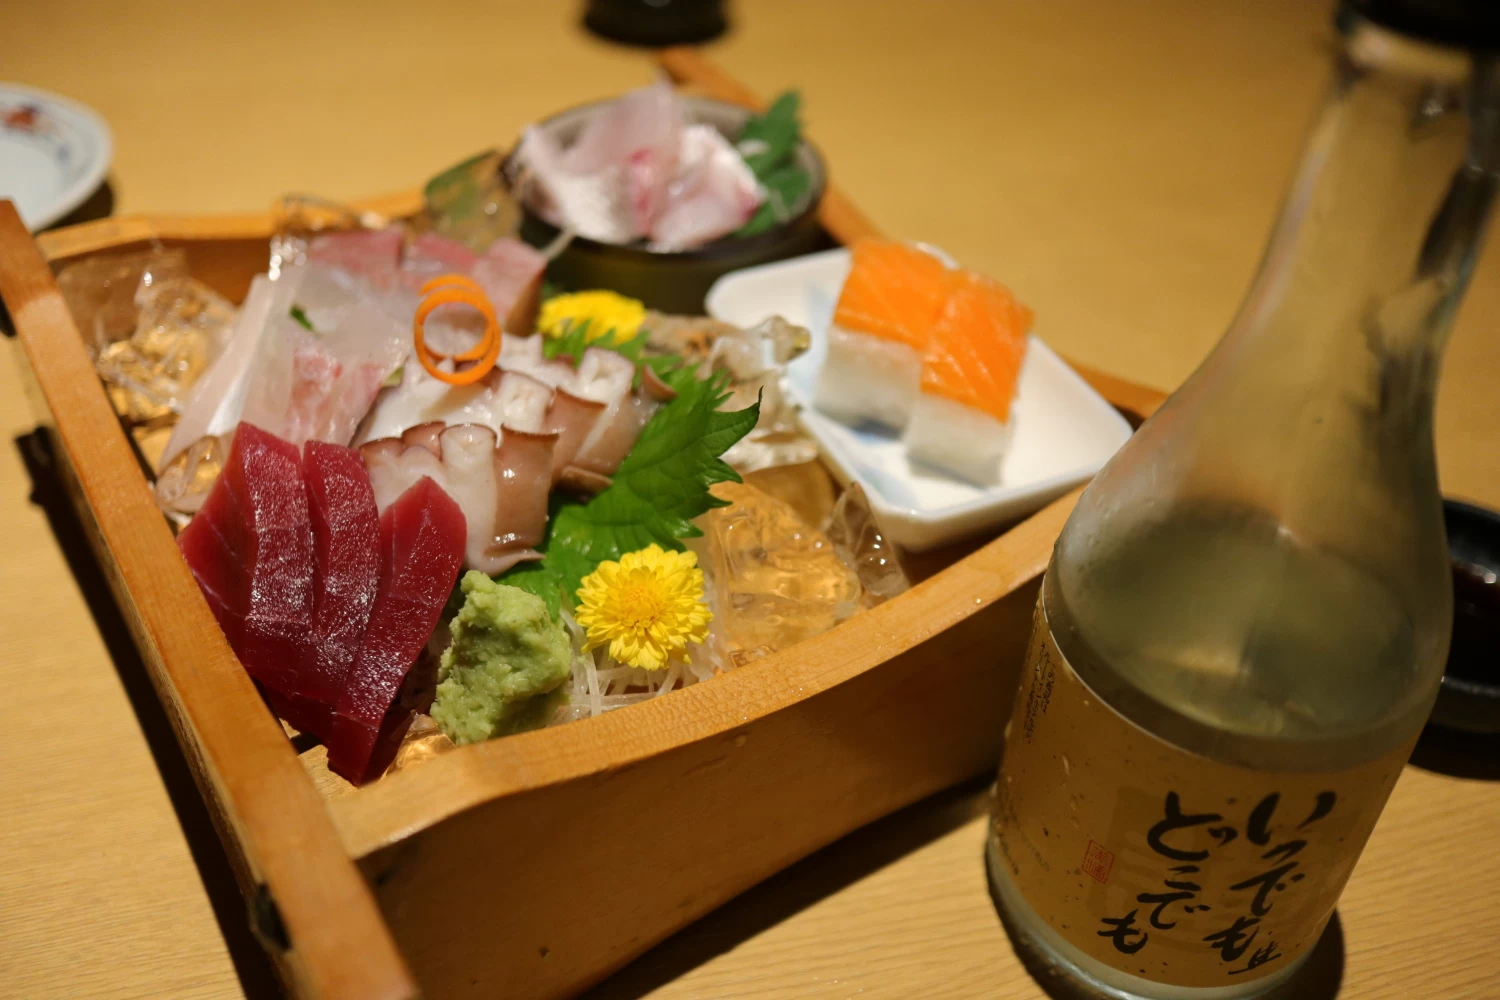 レストラン氷見旬菜「和海」では新鮮な魚介類を